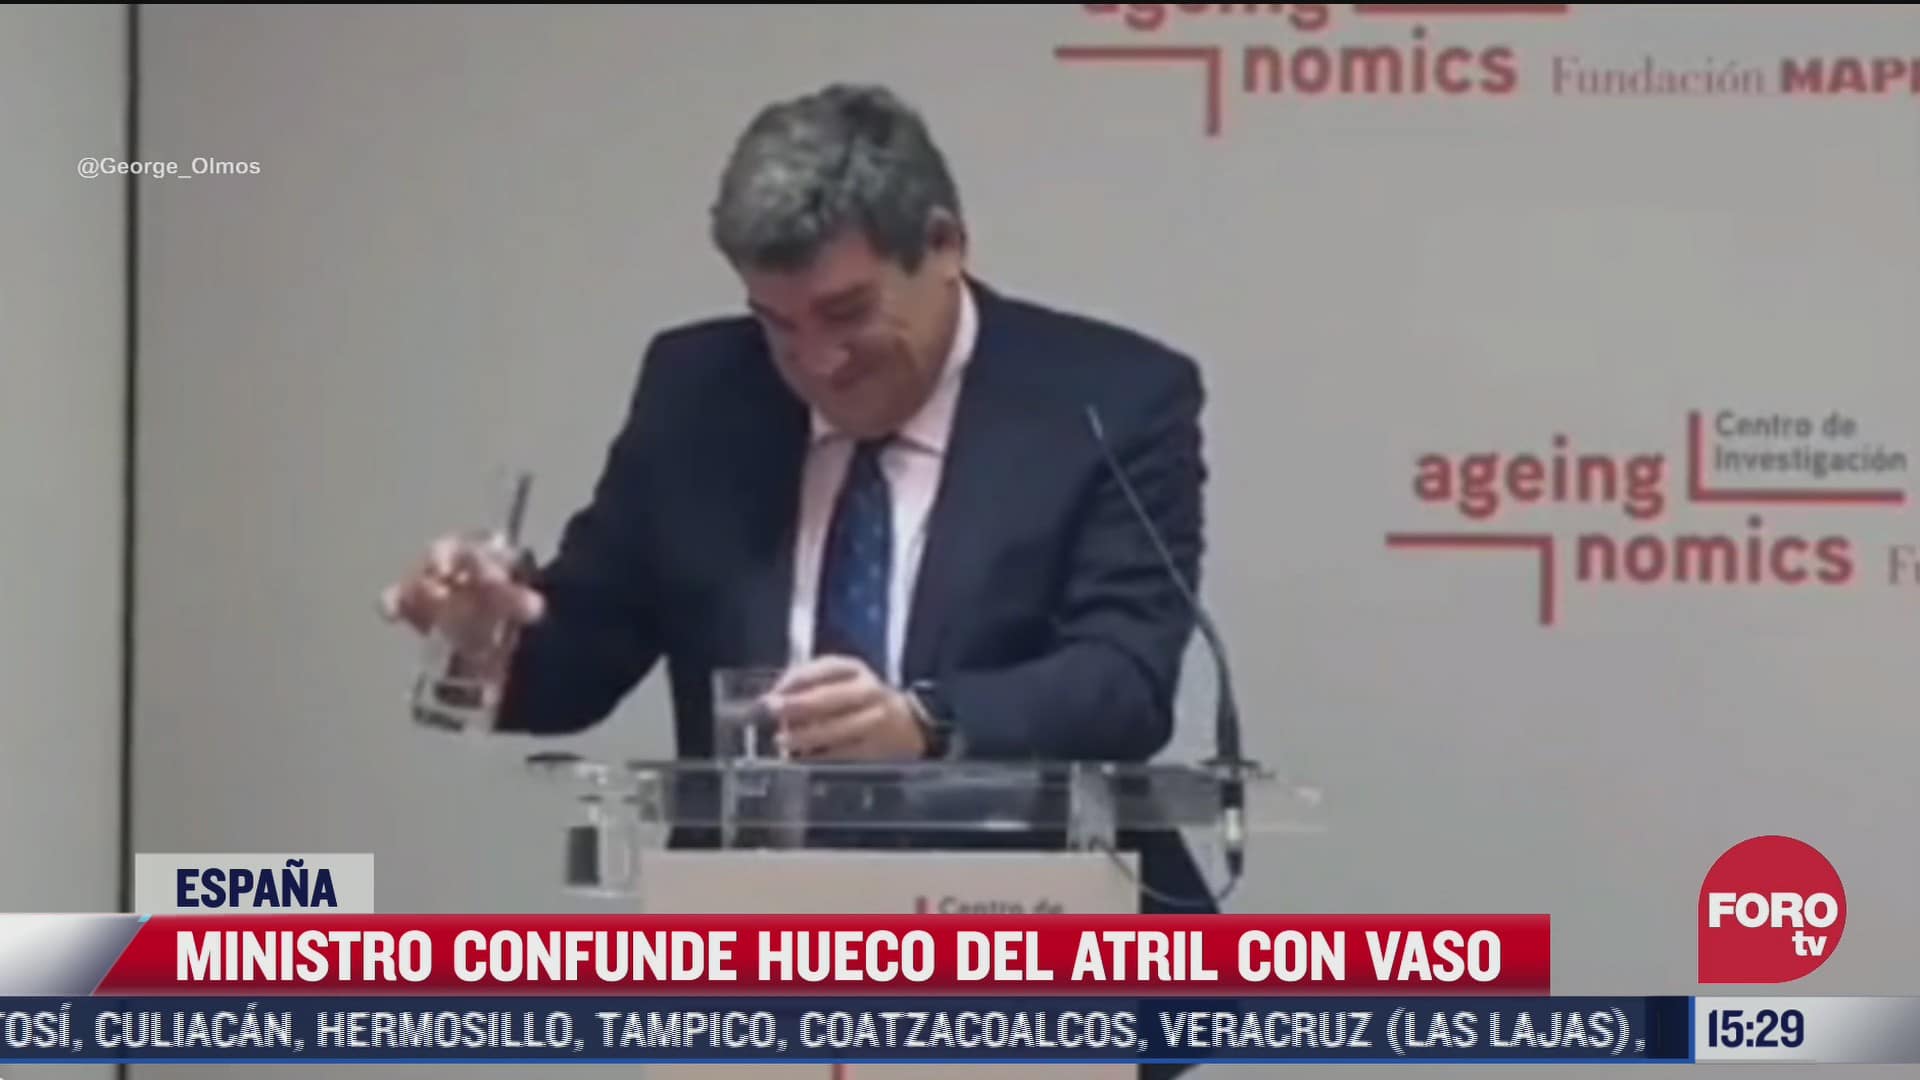 ministro espanol se hace viral por confundir un vaso con el hueco del atril